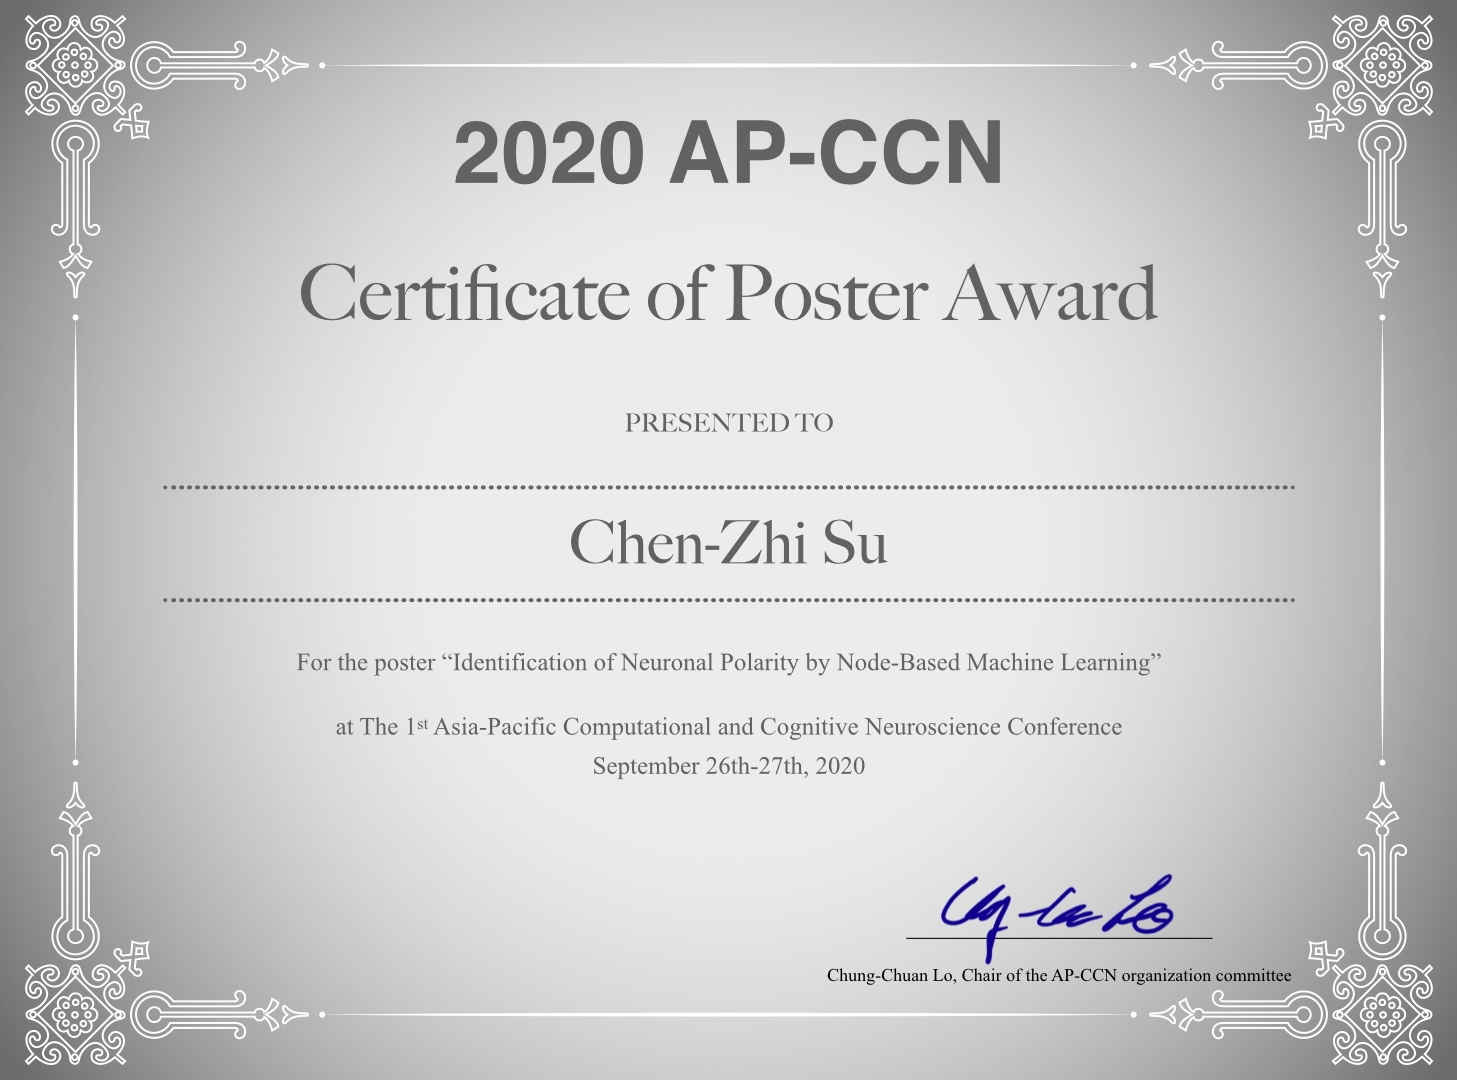 資料科學家蘇晨知參加2020APCCN榮獲Certificate of Poster Award